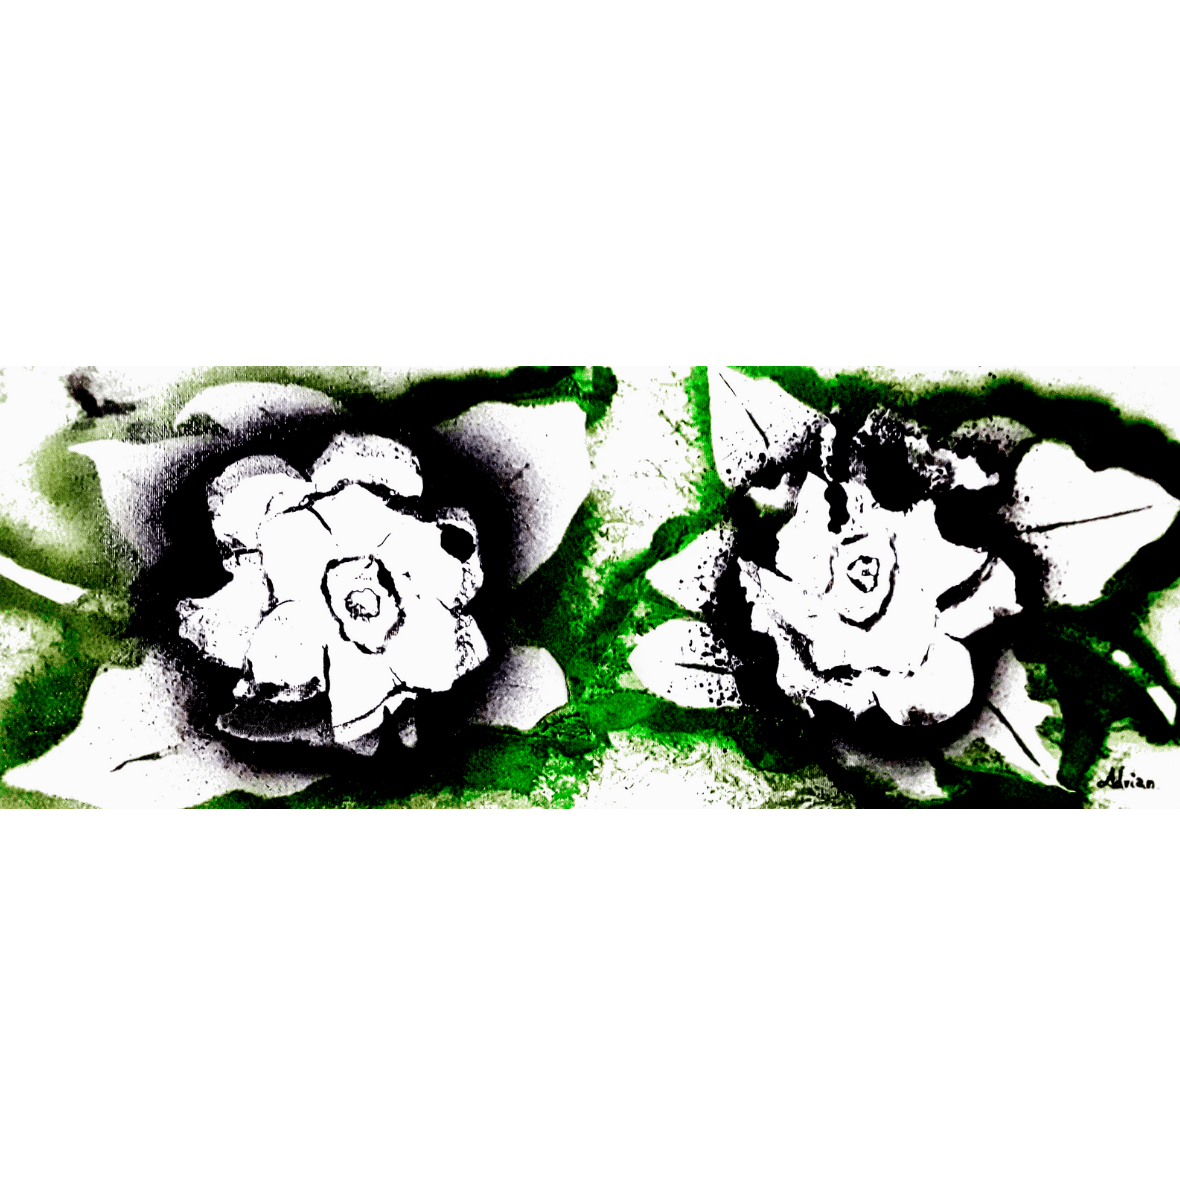 Two Gardenias